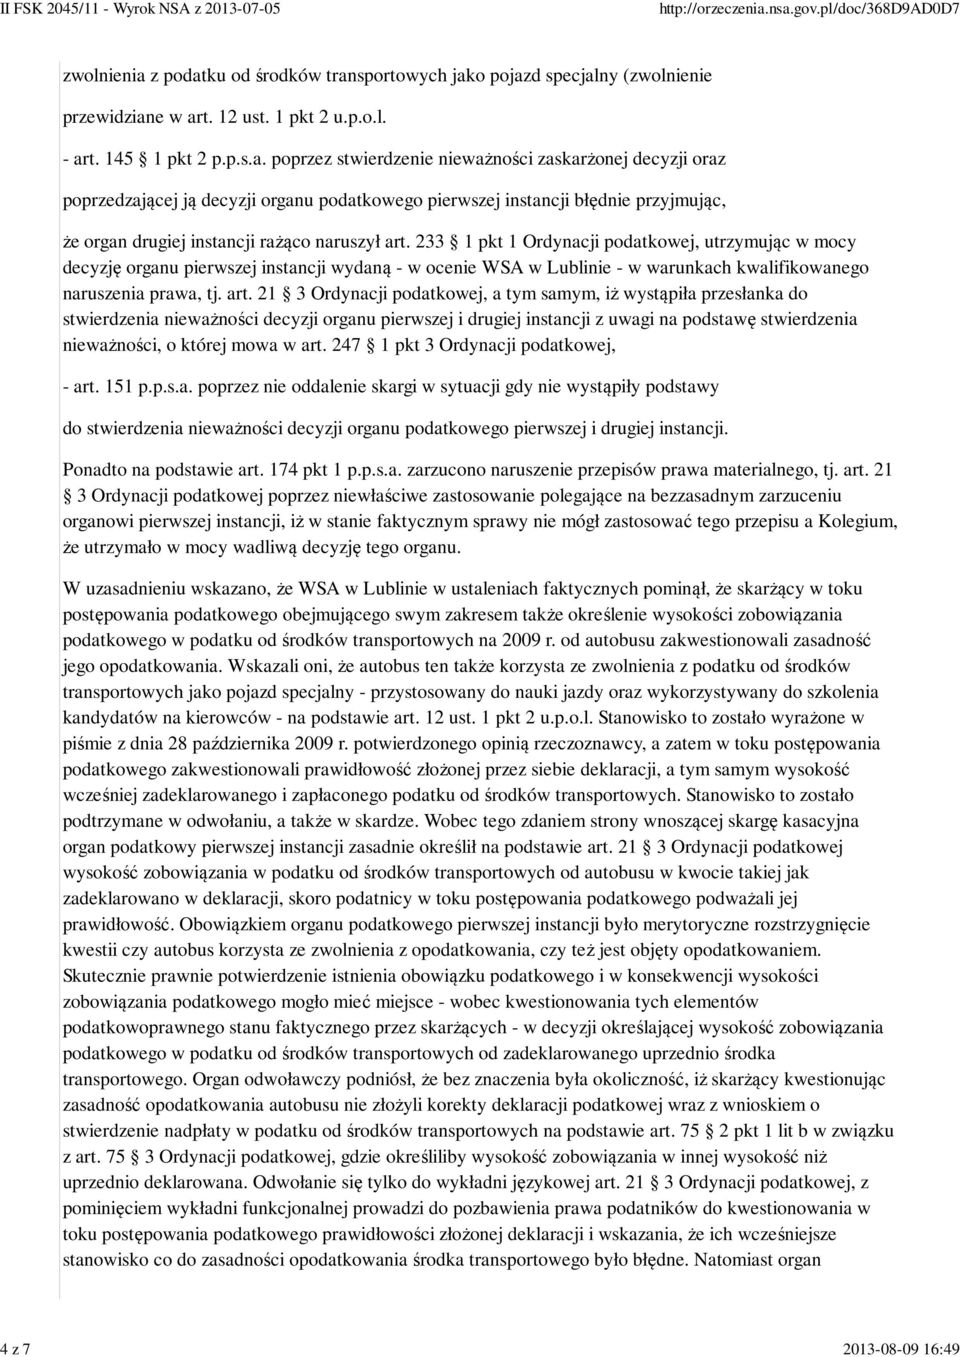 233 1 pkt 1 Ordynacji podatkowej, utrzymując w mocy decyzję organu pierwszej instancji wydaną - w ocenie WSA w Lublinie - w warunkach kwalifikowanego naruszenia prawa, tj. art.